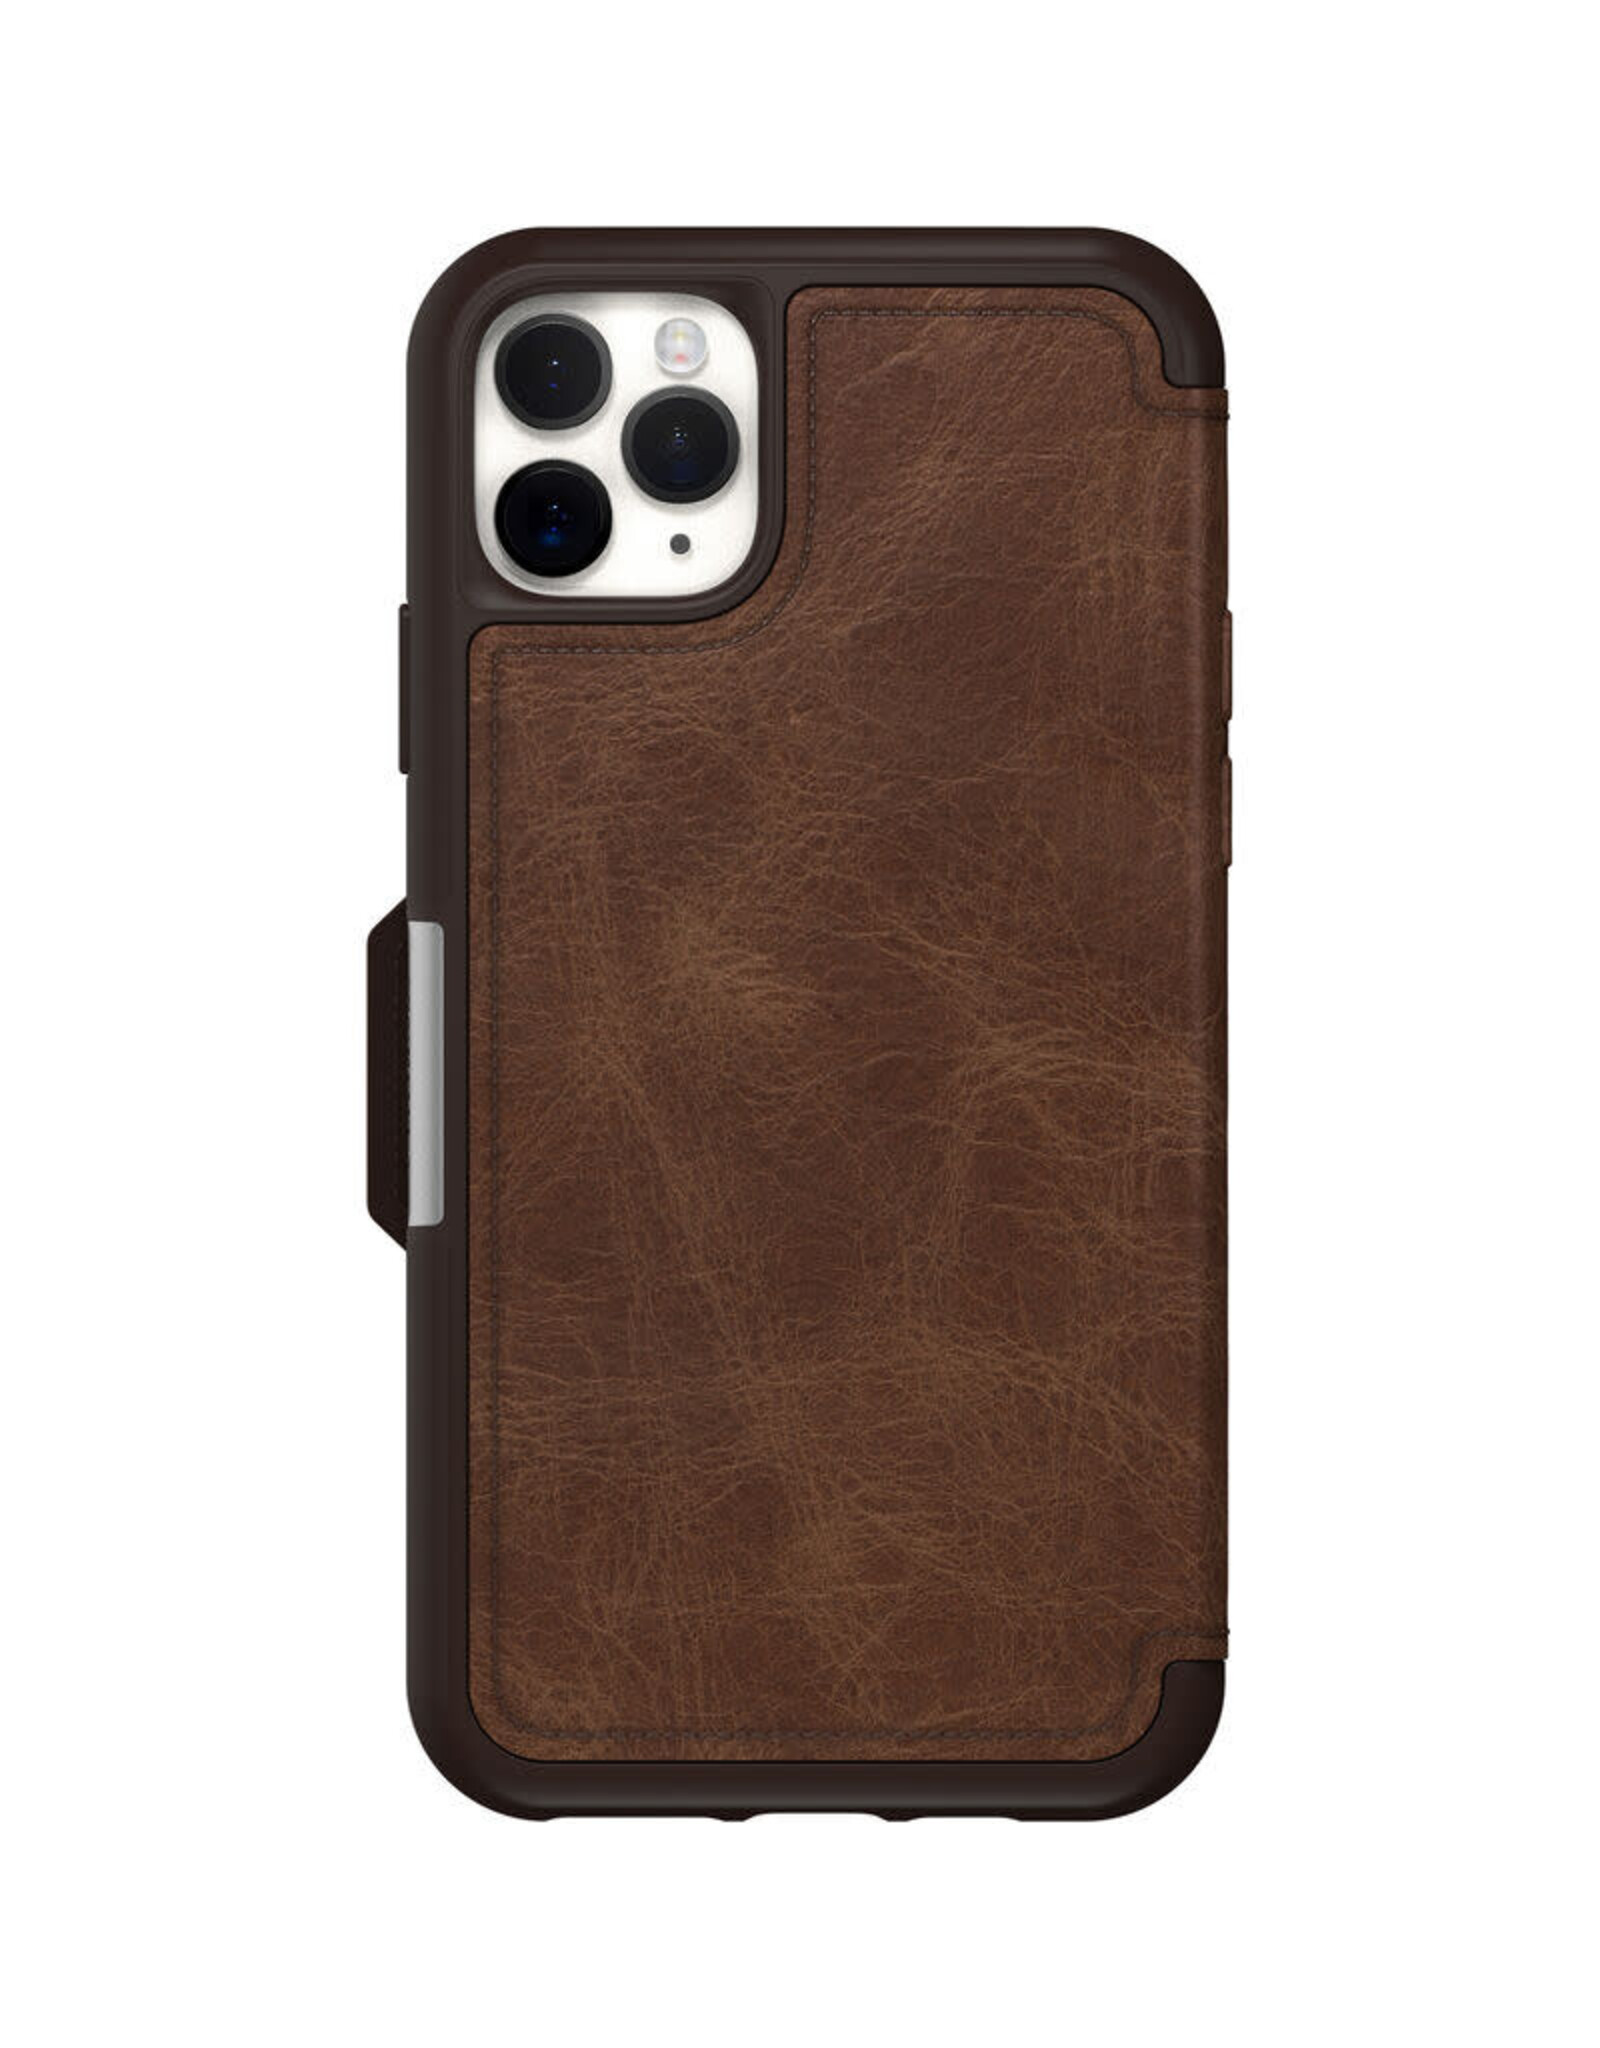 Otterbox Otterbox Strada Case suits iPhone 11 Pro Max - Espresso